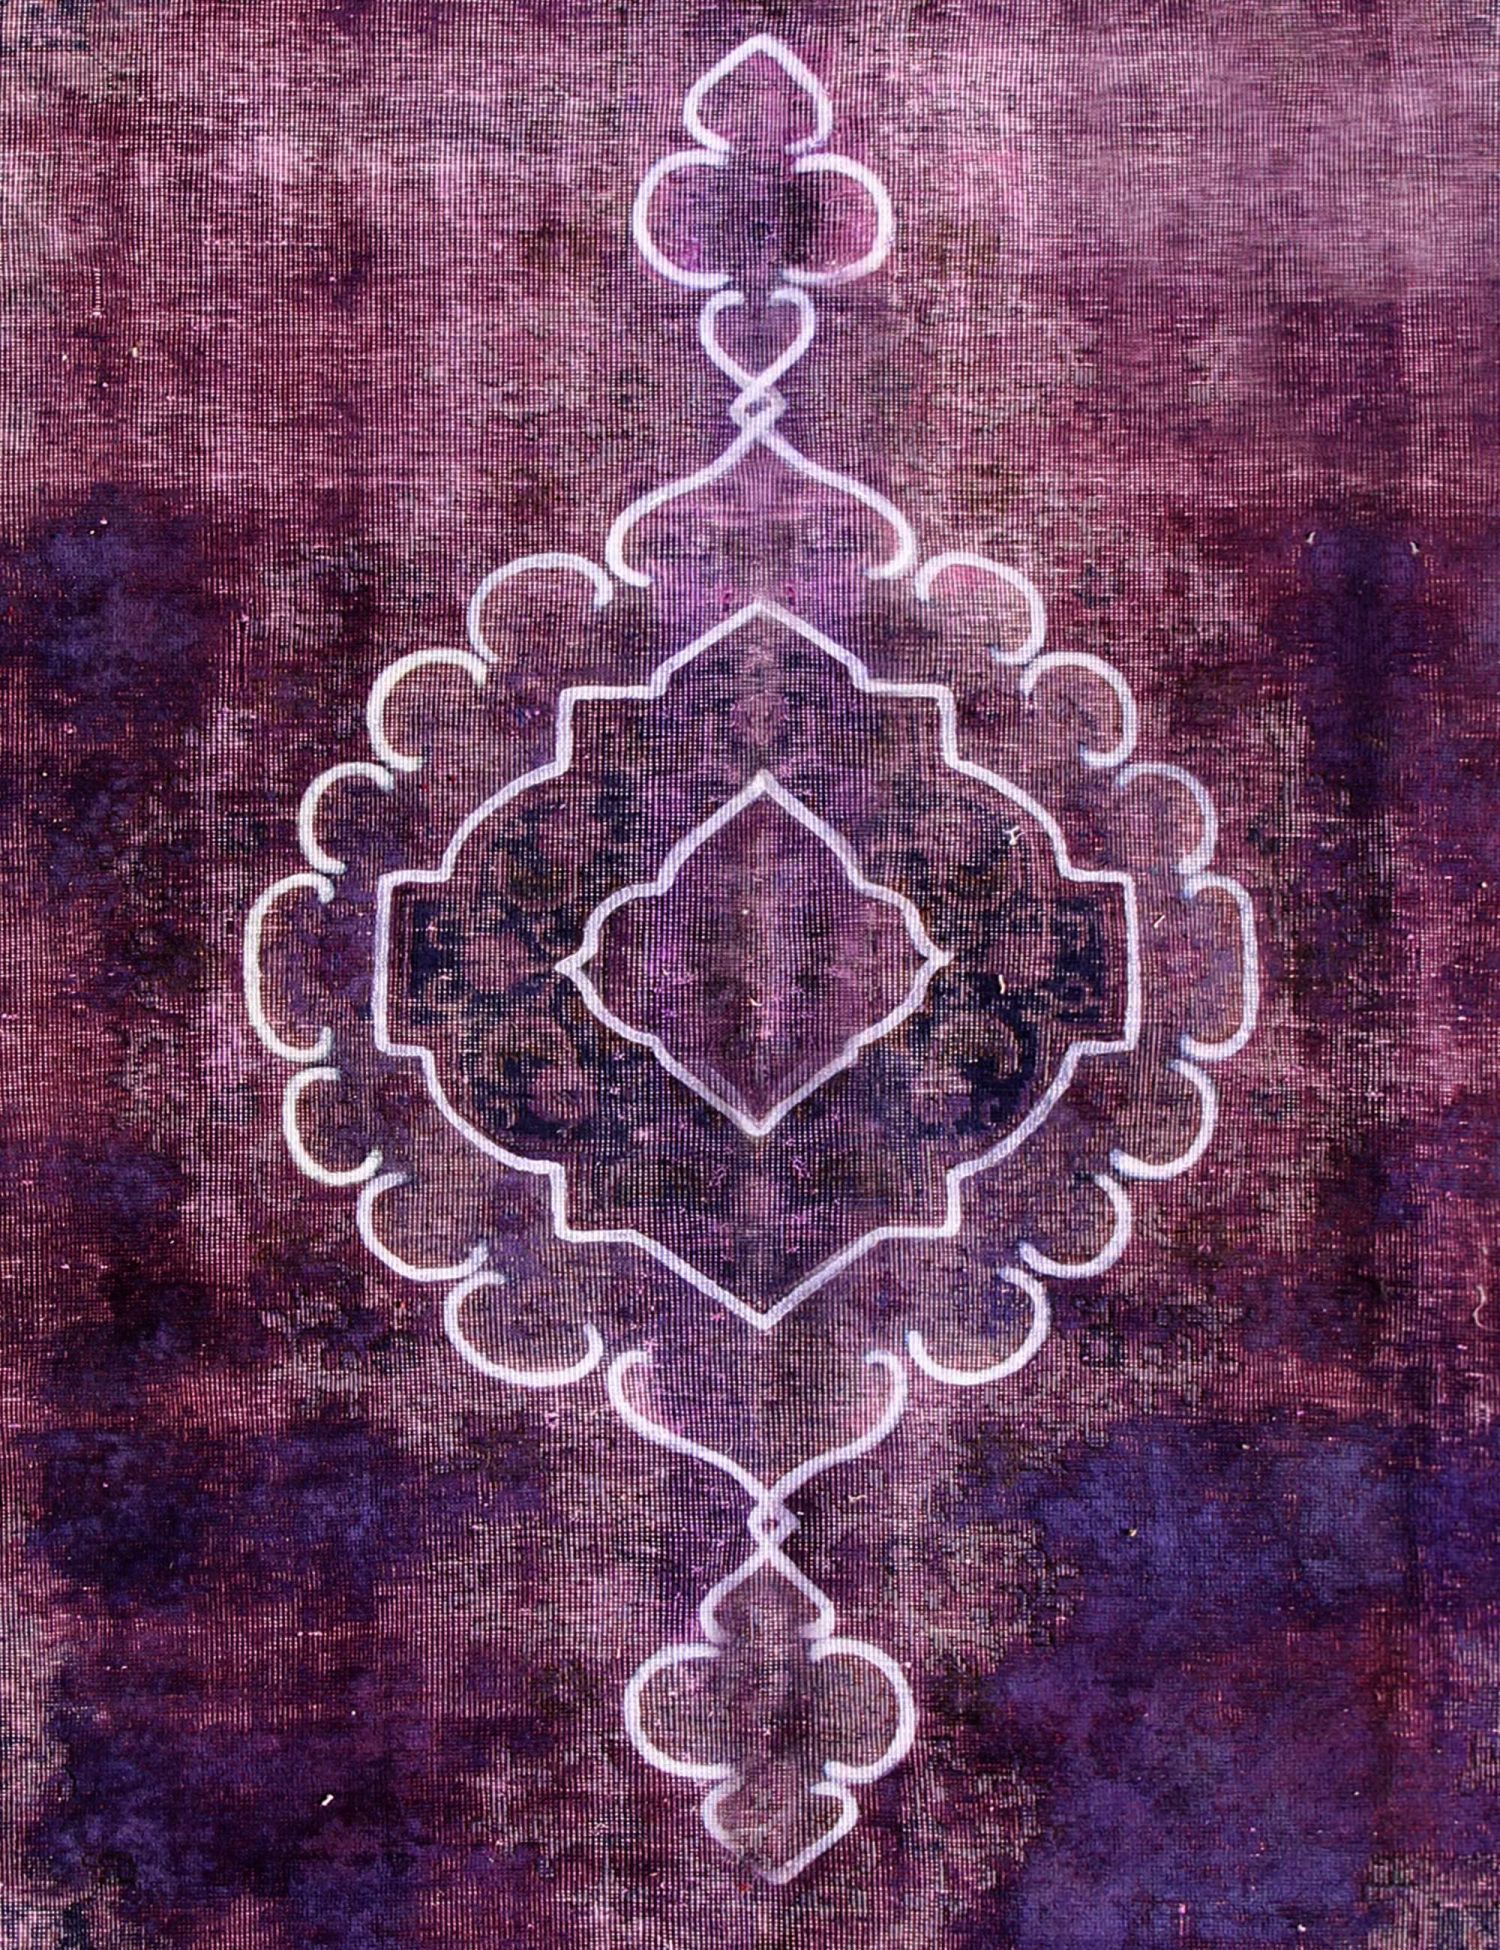 Persischer Vintage Teppich  lila <br/>276 x 178 cm